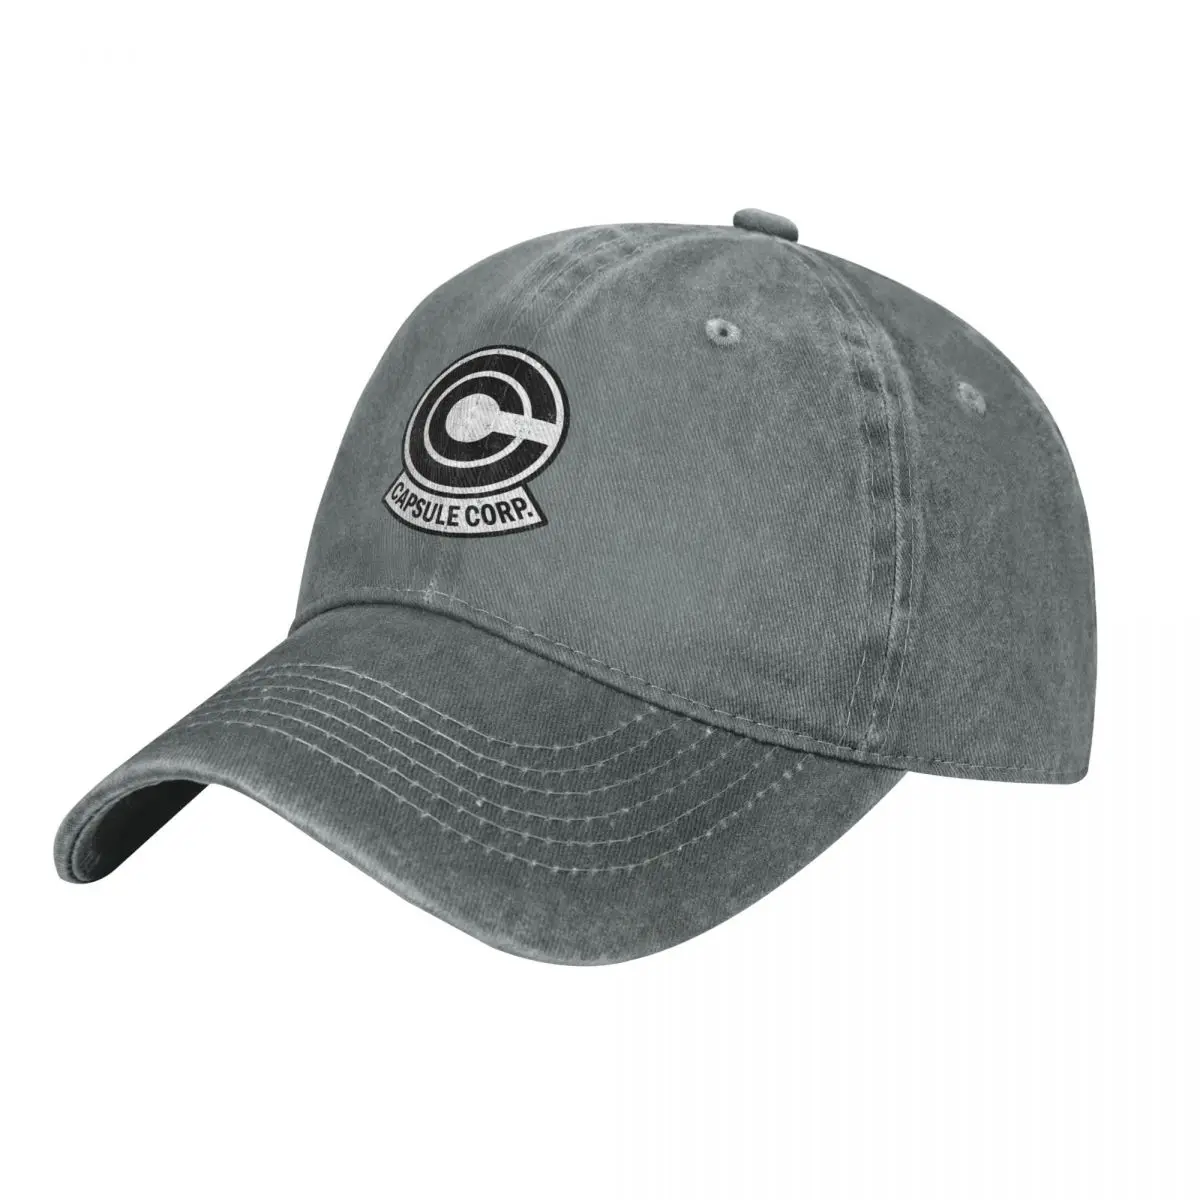 Ковбойская шляпа с ретро логотипом Capsule corp, мужской капюшон, шляпа для рыбалки, пляжная кепка для пикника, женская